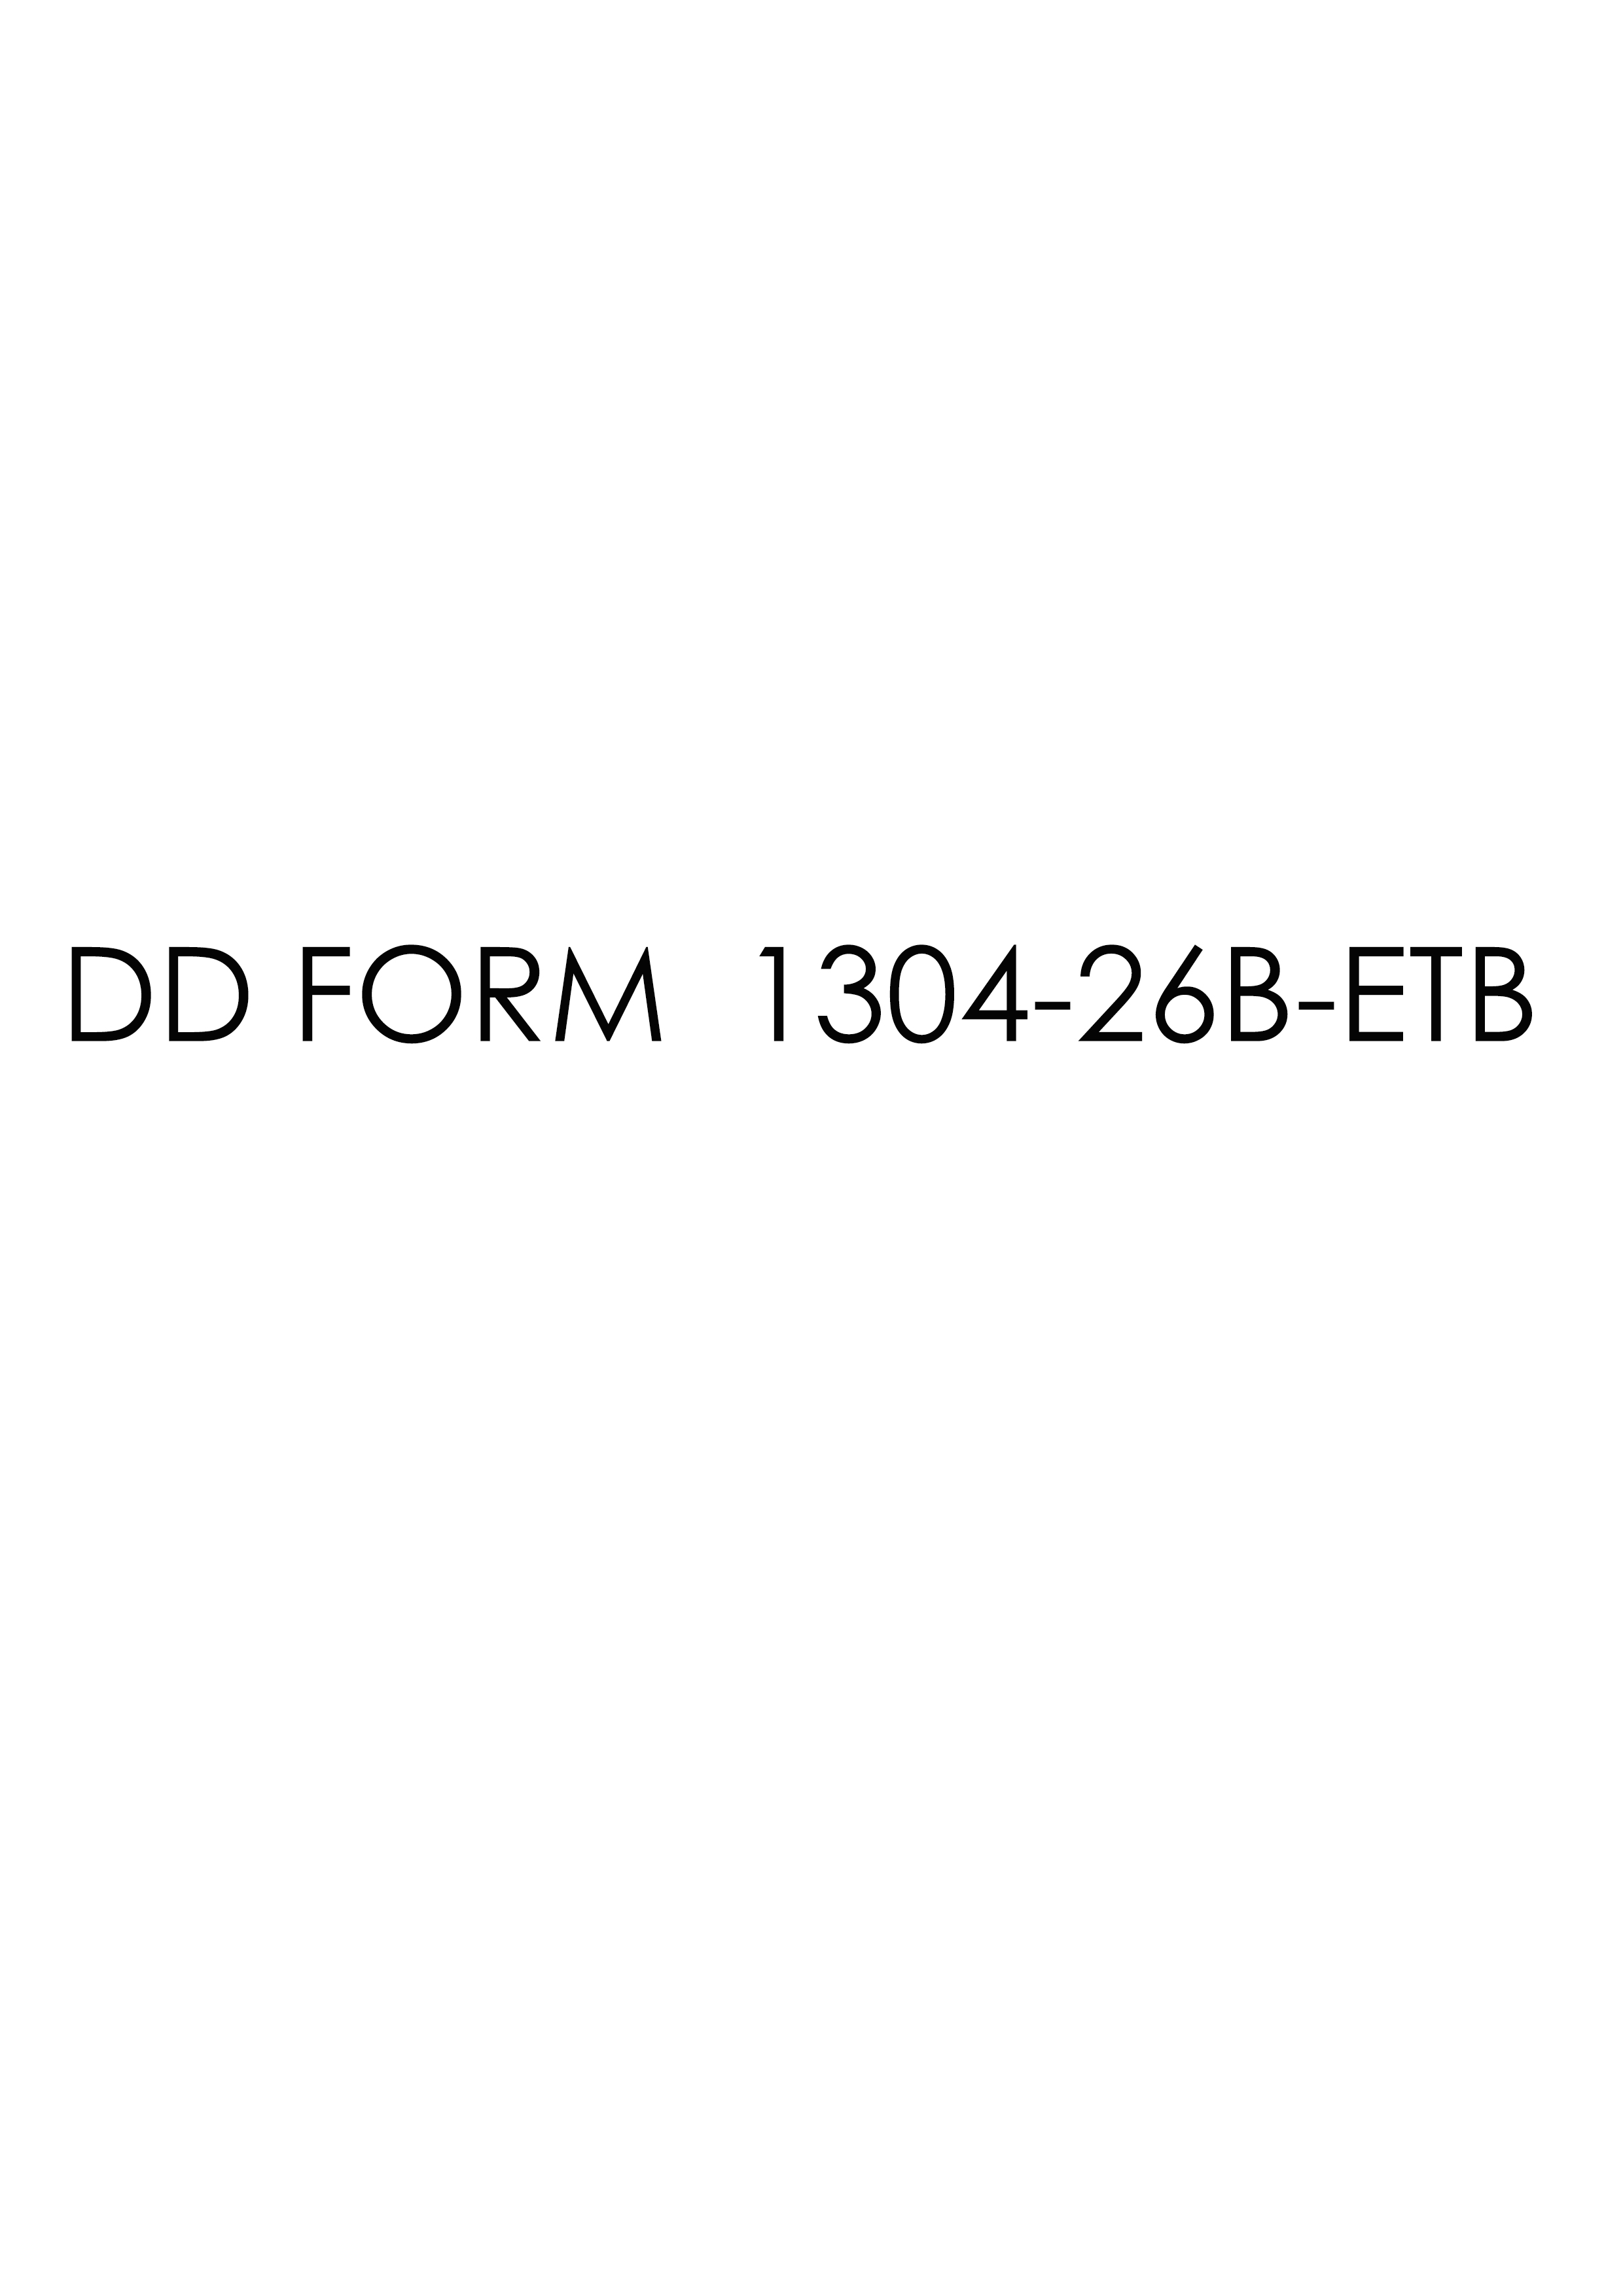 Download dd Form 1304-26B-ETB